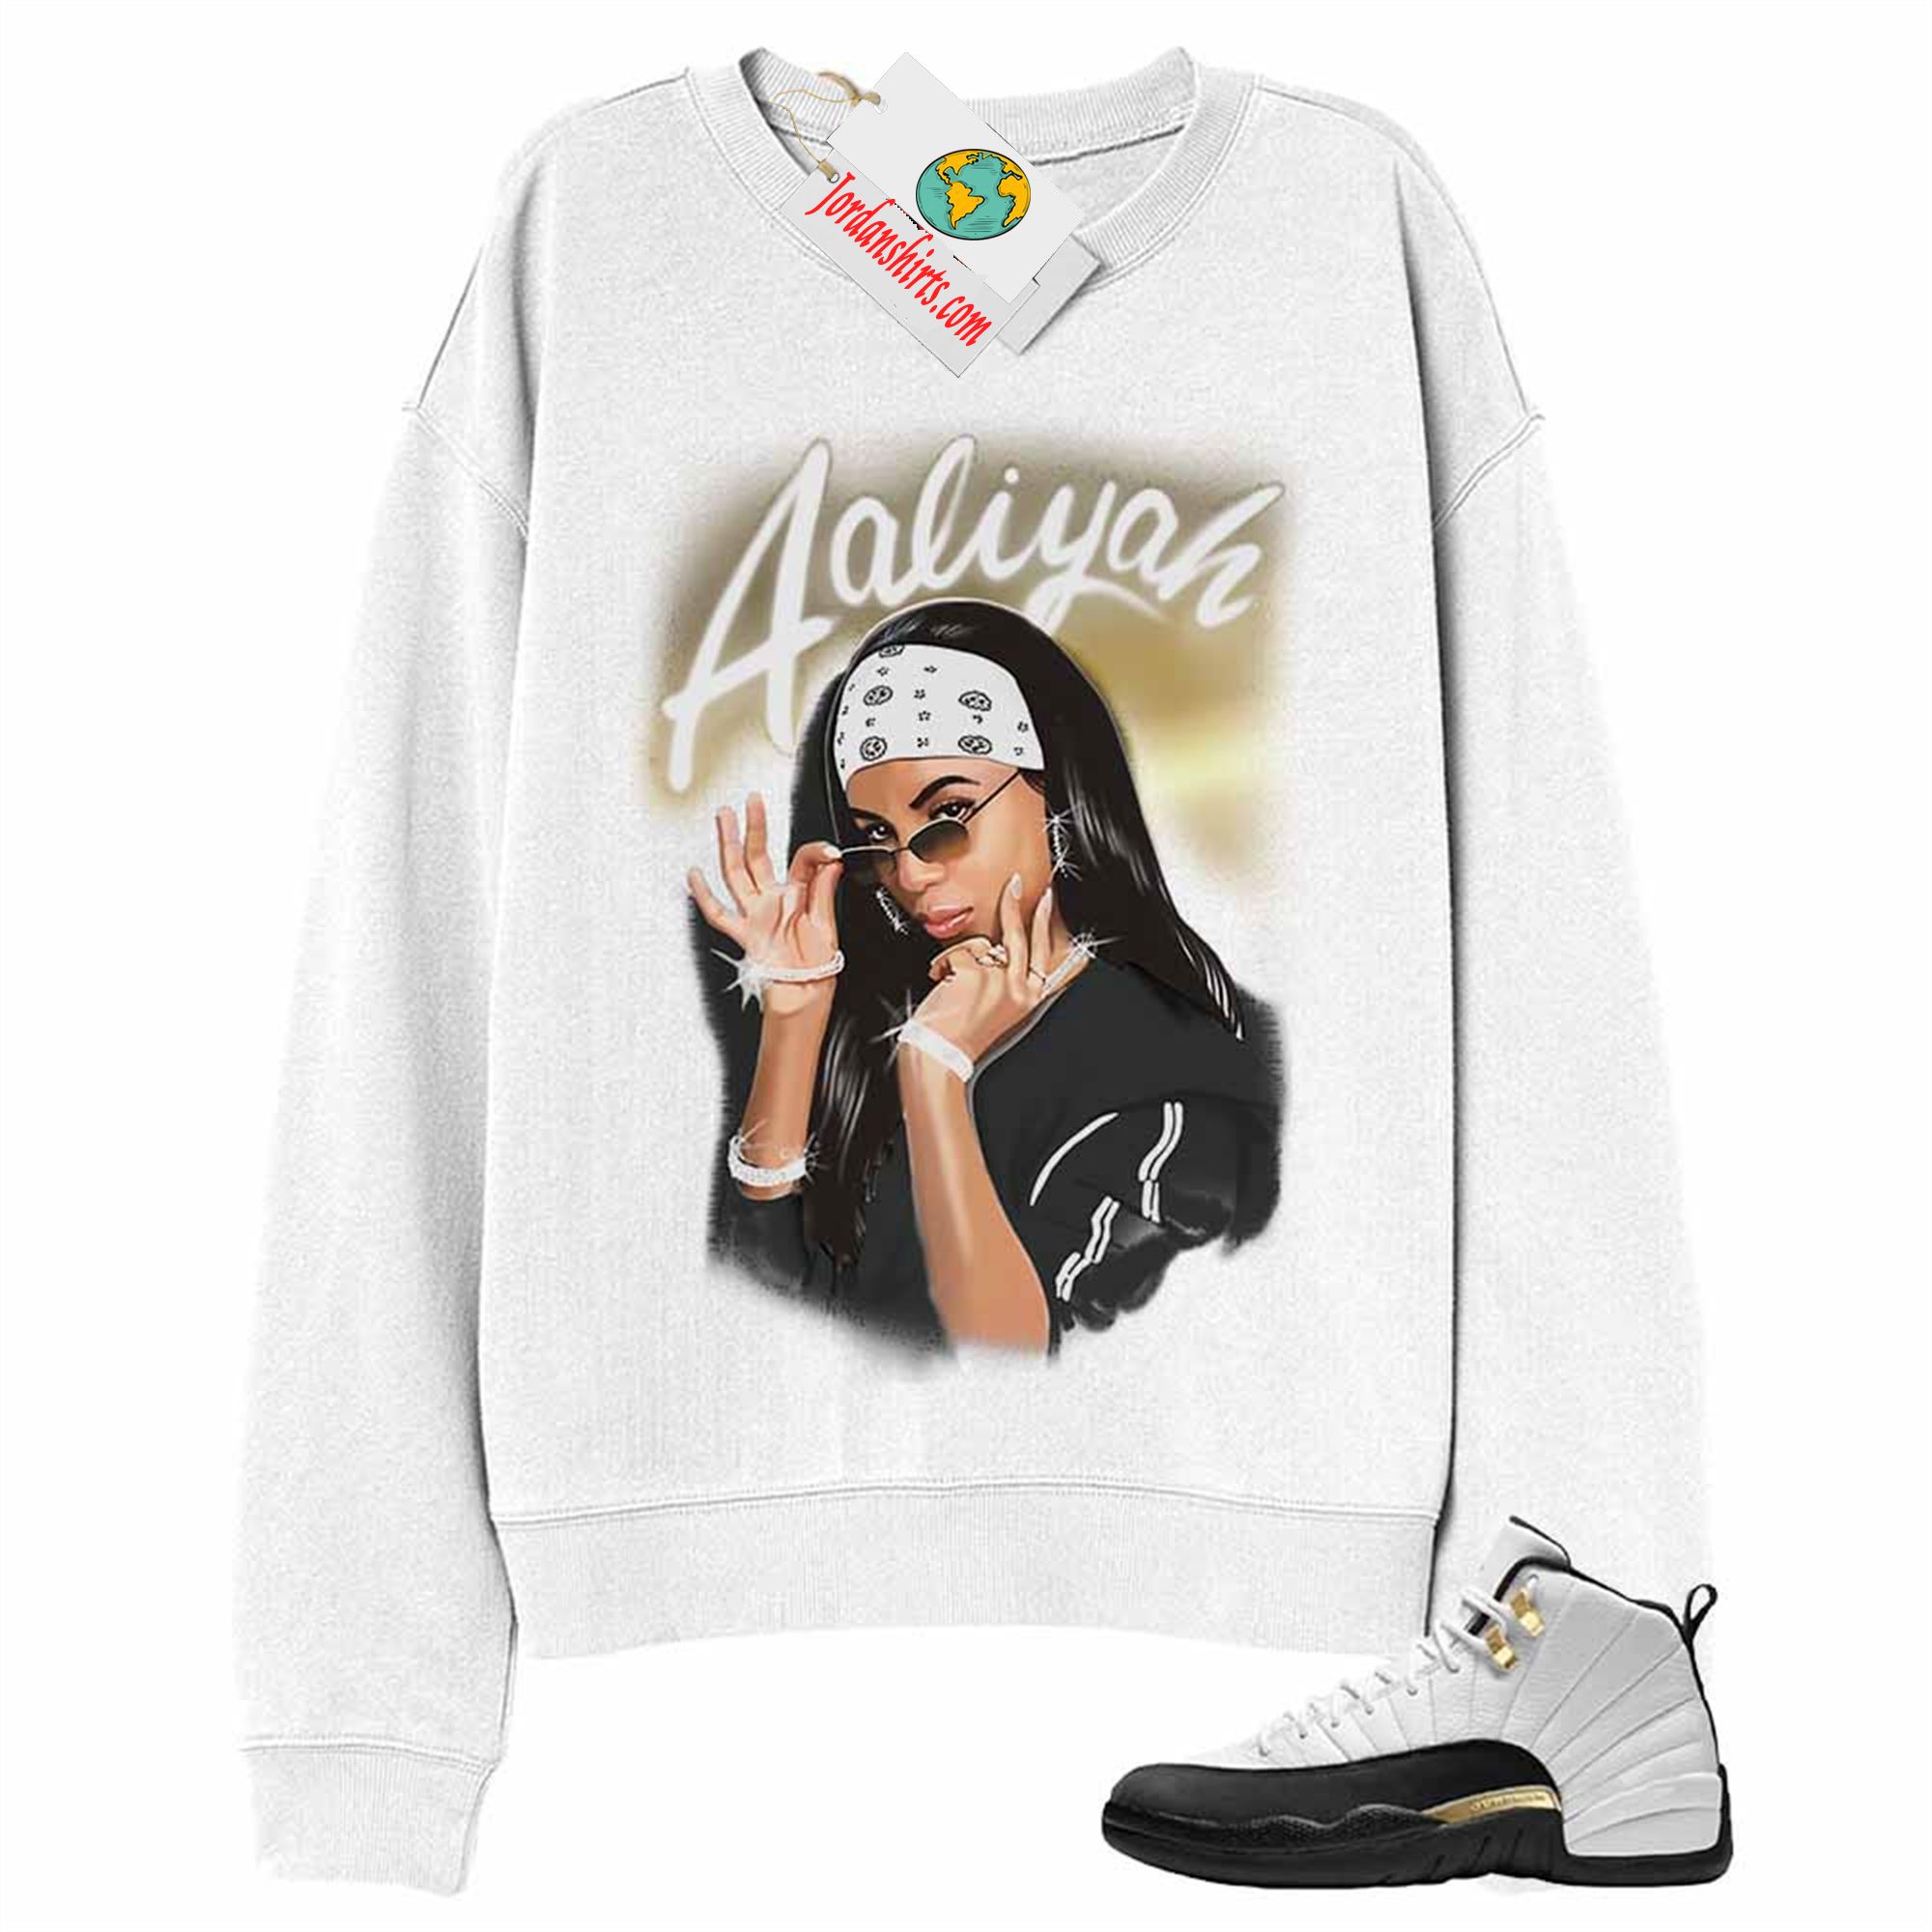 Jordan 12 Sweatshirt, Aaliyah Airbrush White Sweatshirt Air Jordan 12 Royalty 12s Plus Size Up To 5xl